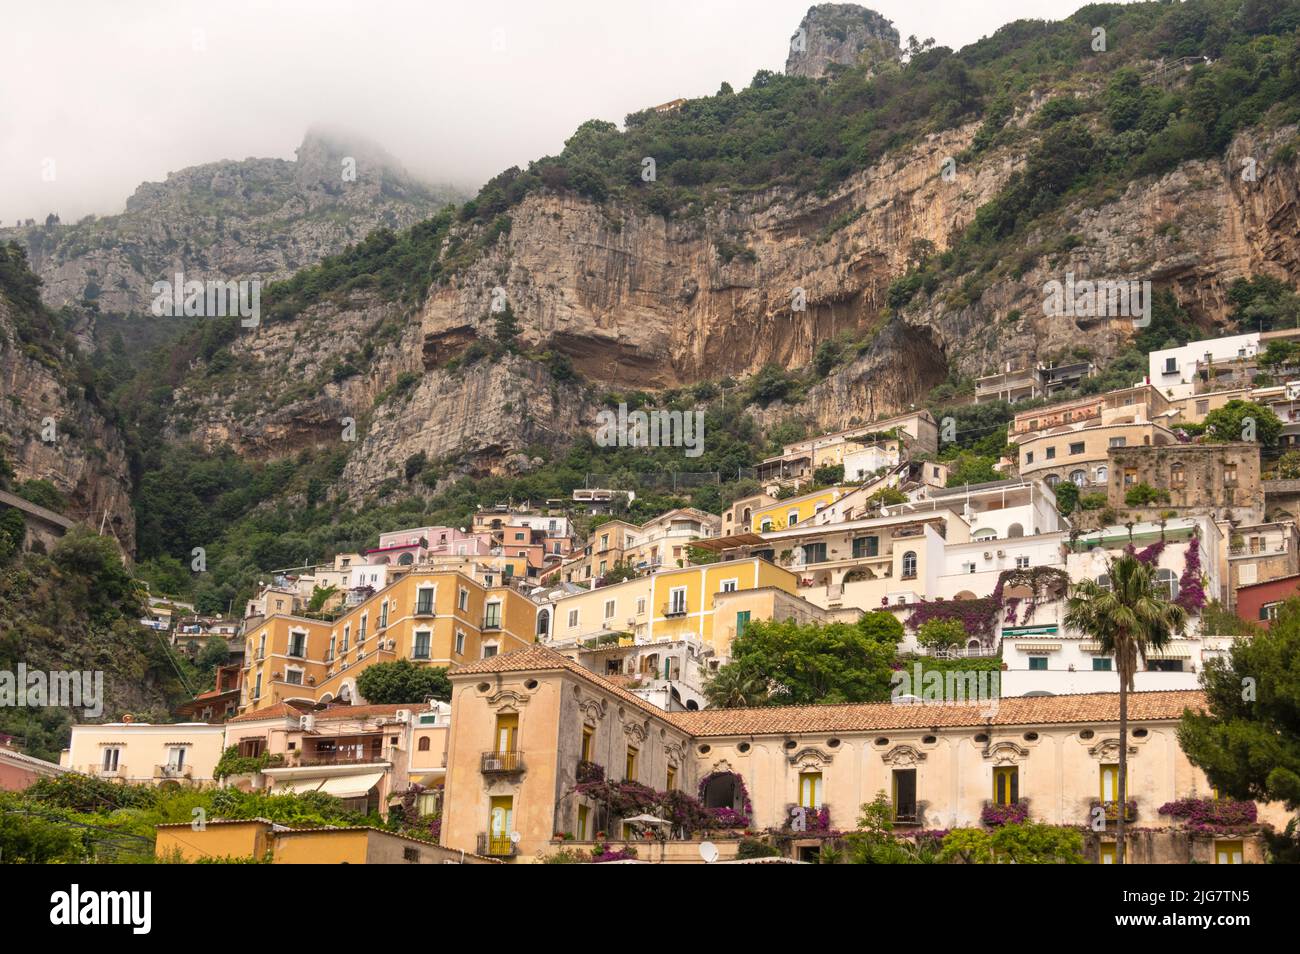 Le village de Positano sur la côte amalfitaine, province de Salerne, Campanie, Italie Banque D'Images